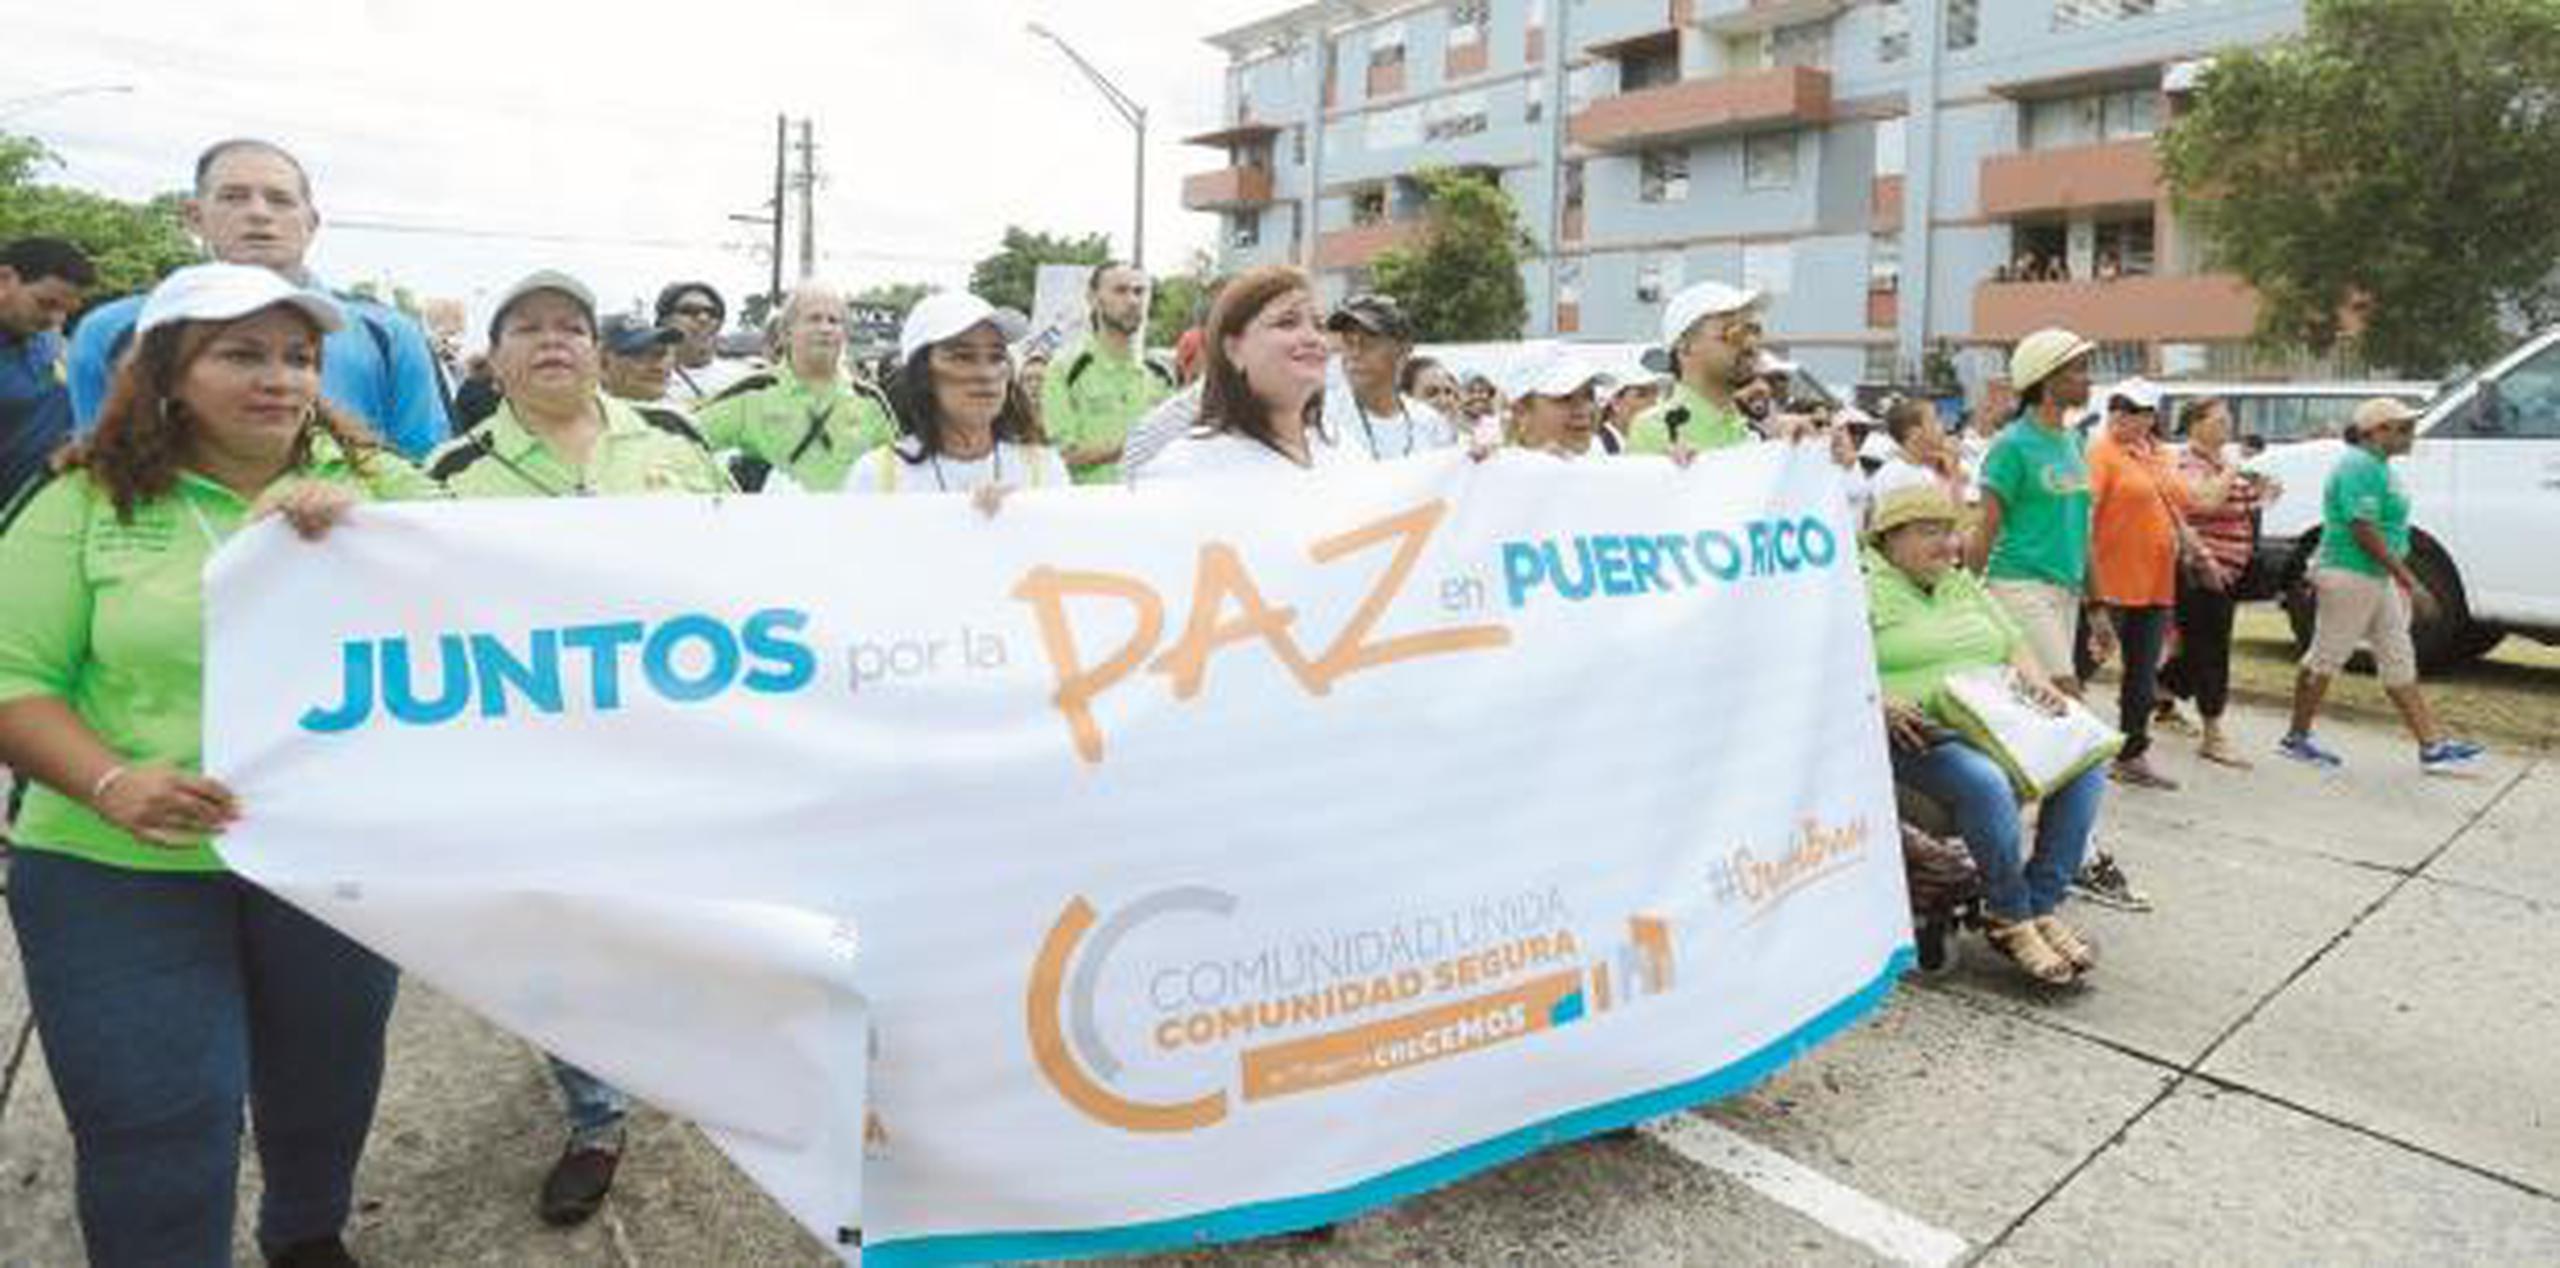 La marcha saldrá del parque Luis Muñoz Rivera en San Juan y terminará en las escalinatas del área norte de El Capitolio.  (Archivo)